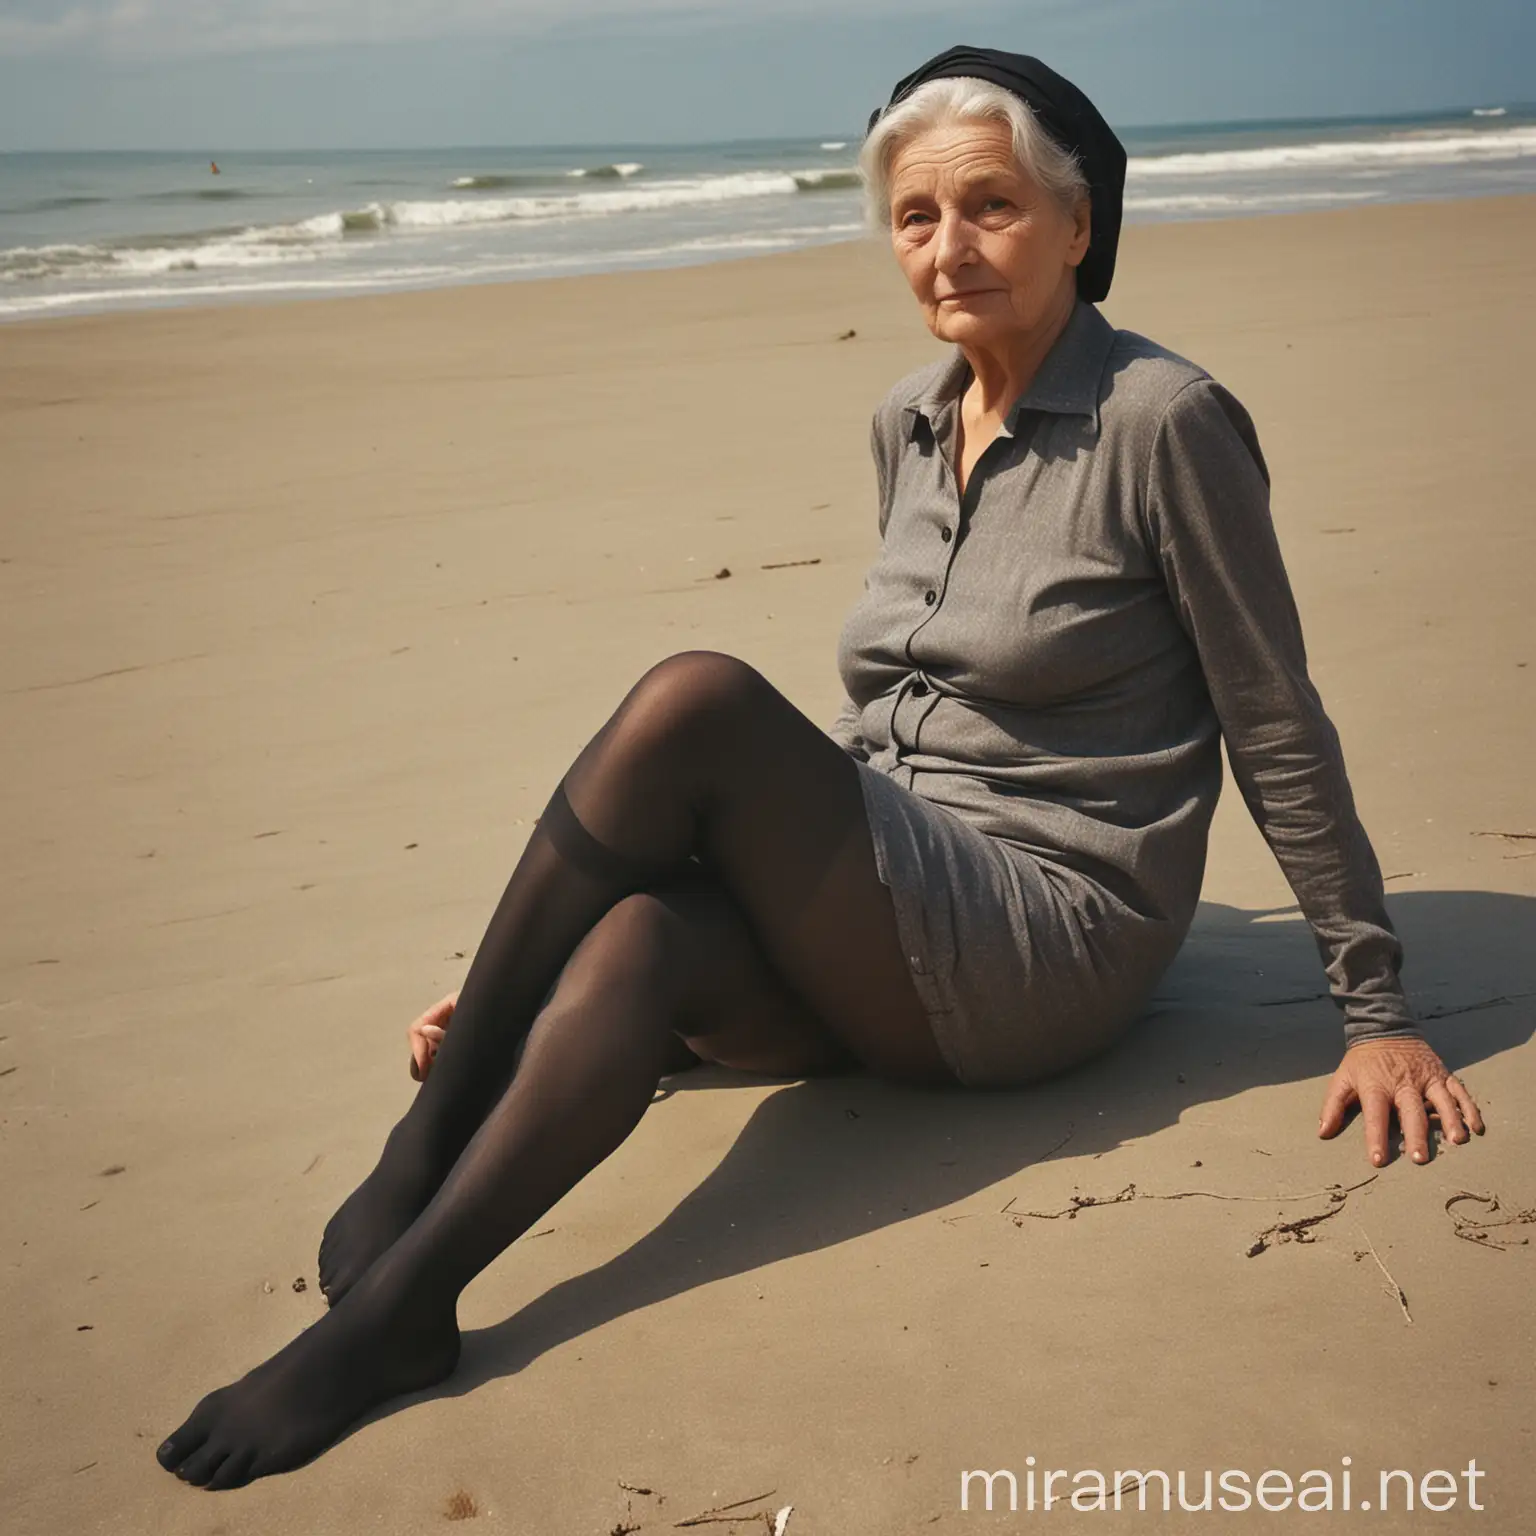 Elderly Woman Relaxing on Beach in 1969